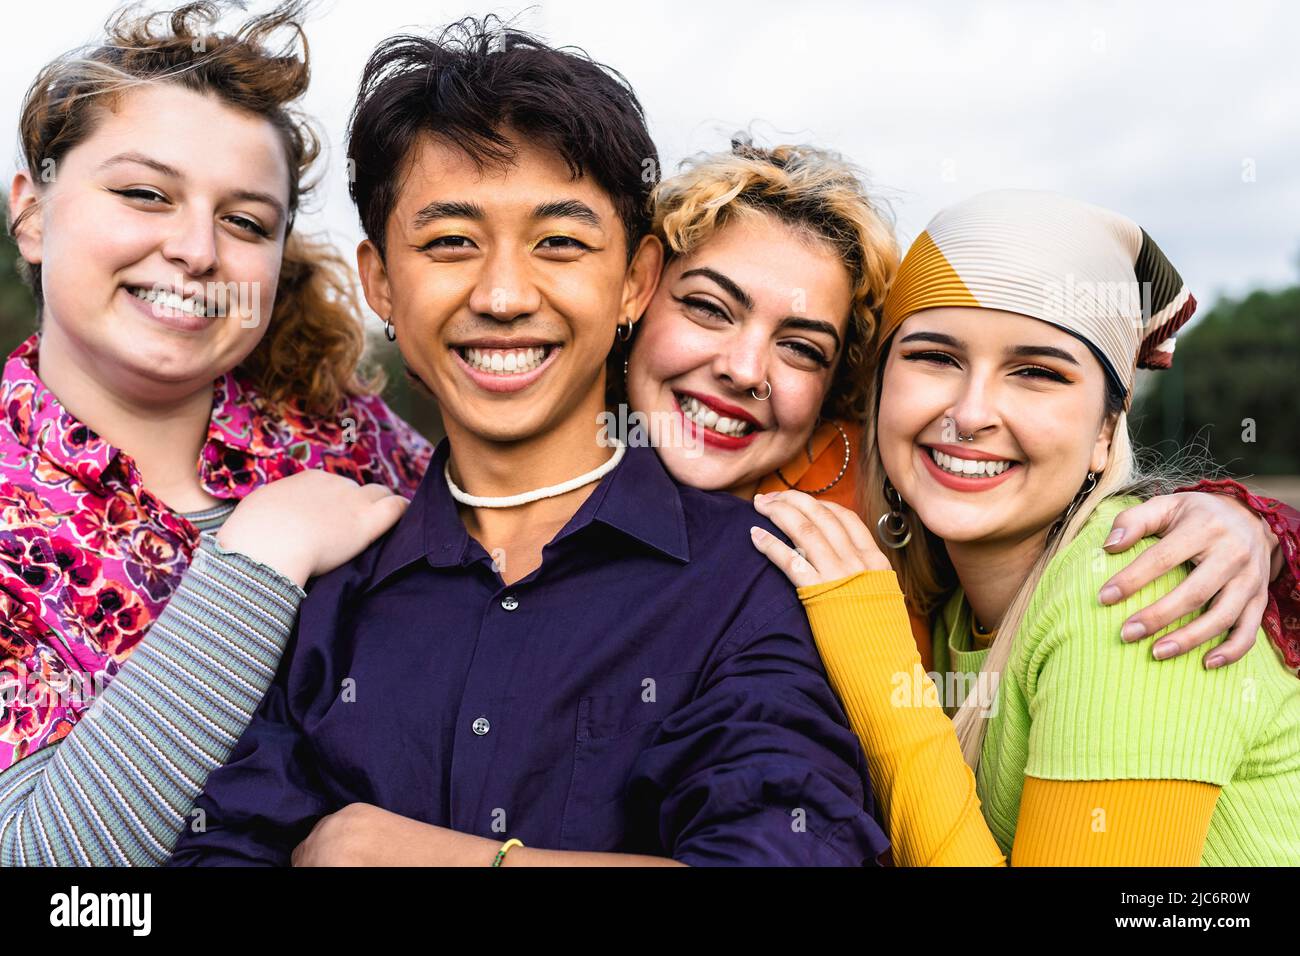 Glückliche junge, vielfältige Freunde, die Spaß haben, gemeinsam zu hängen - Jugend Menschen Millennial Generation Konzept Stockfoto